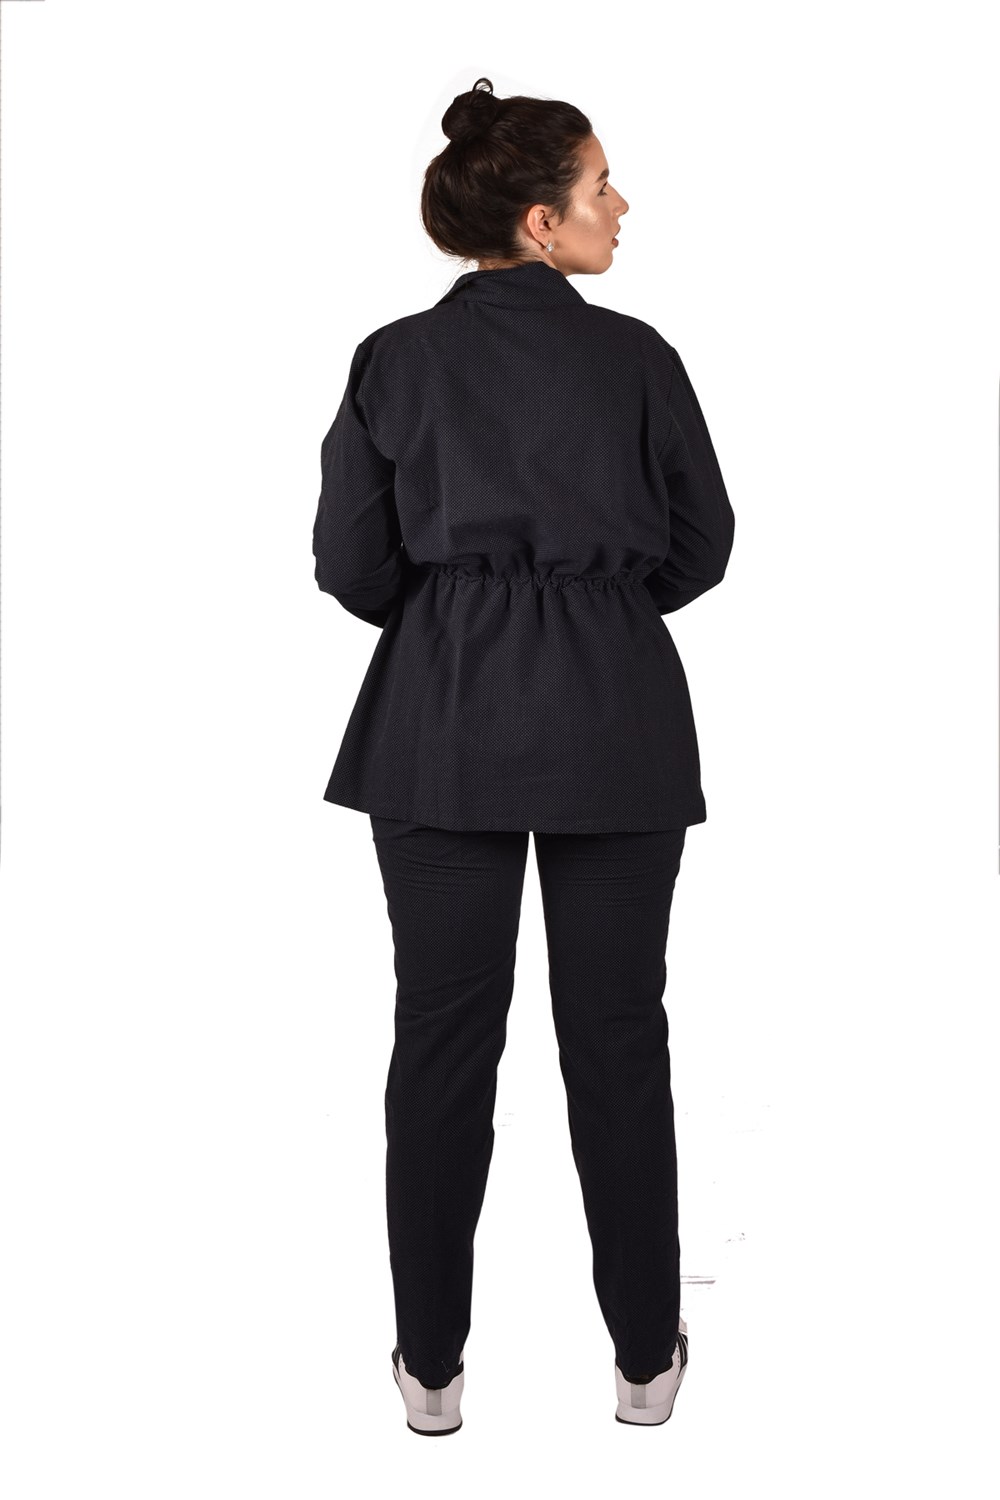 Ultimod Siyah Ceket Pantolon Büyük Beden Kadın İkili Takım ULT3251